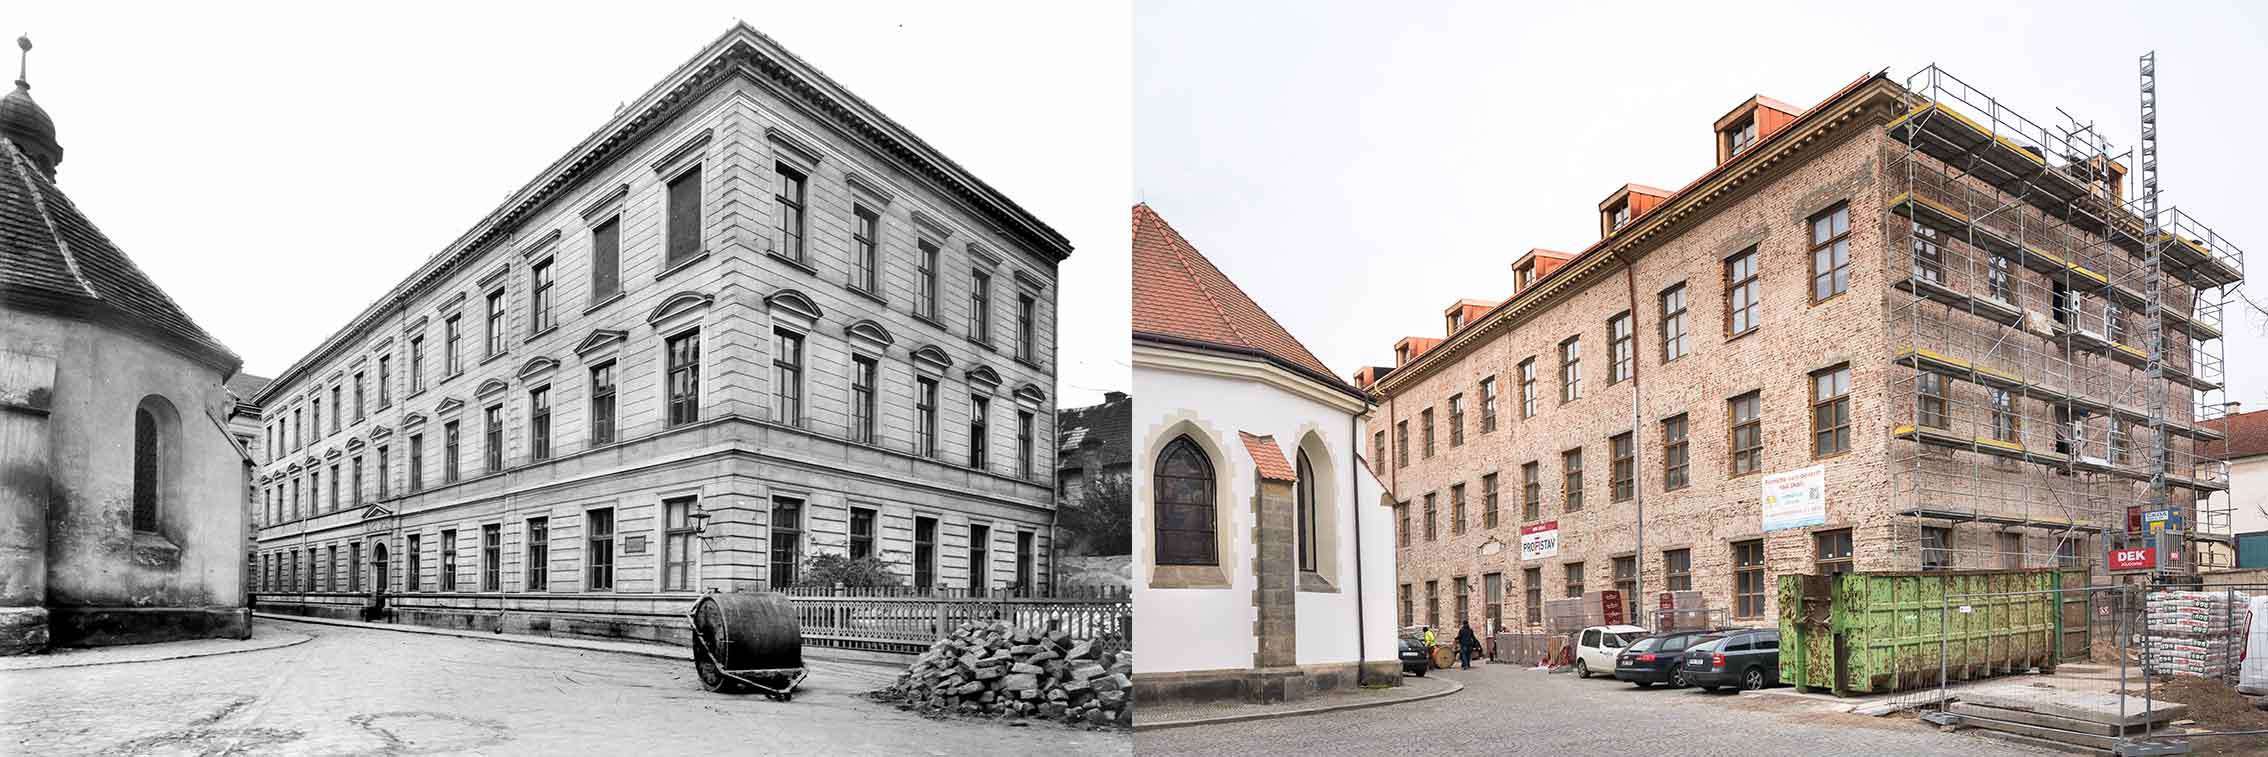 Pardubice, obecná a měšťanská dívčí škola, podoba po přestavbě roku 1891 a dnešní pohled na probíhající rekonstrukci